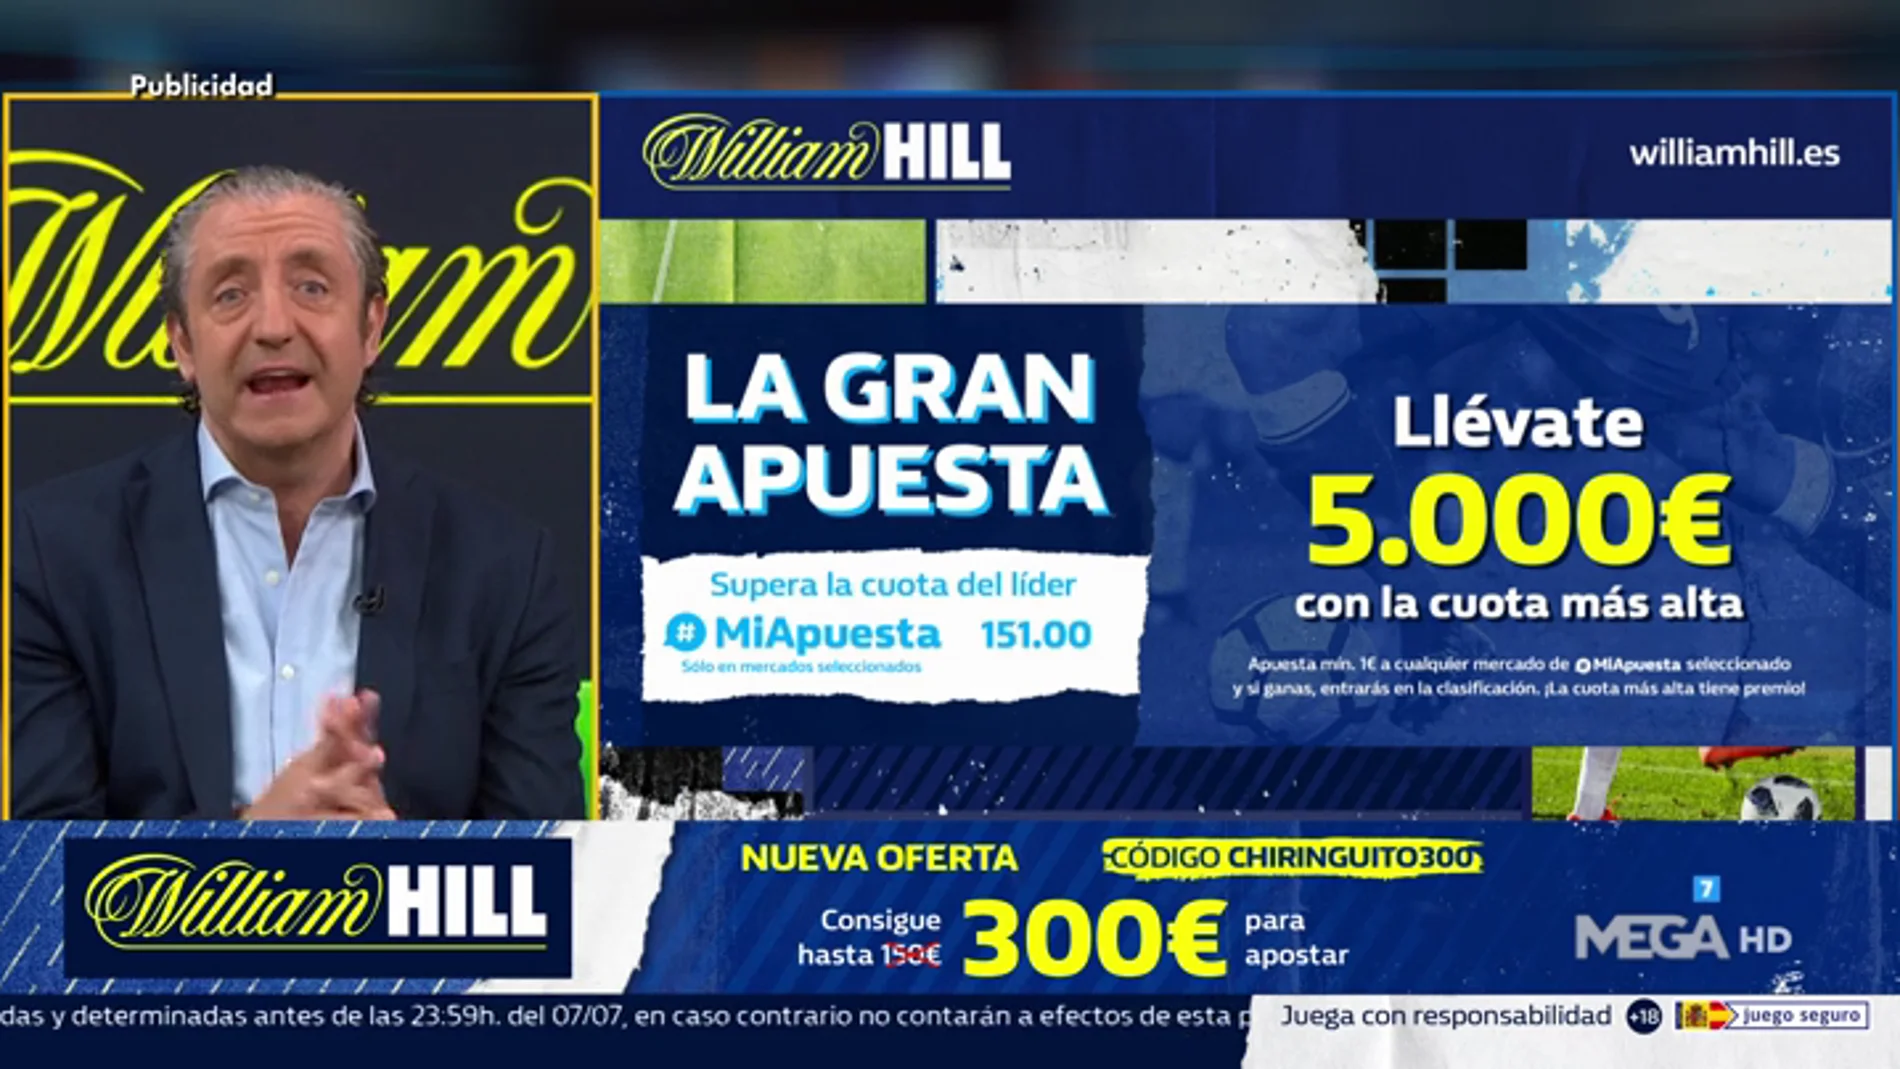  LA SÚPER OFERTA DE REGISTRO DE WILLIAM HILL